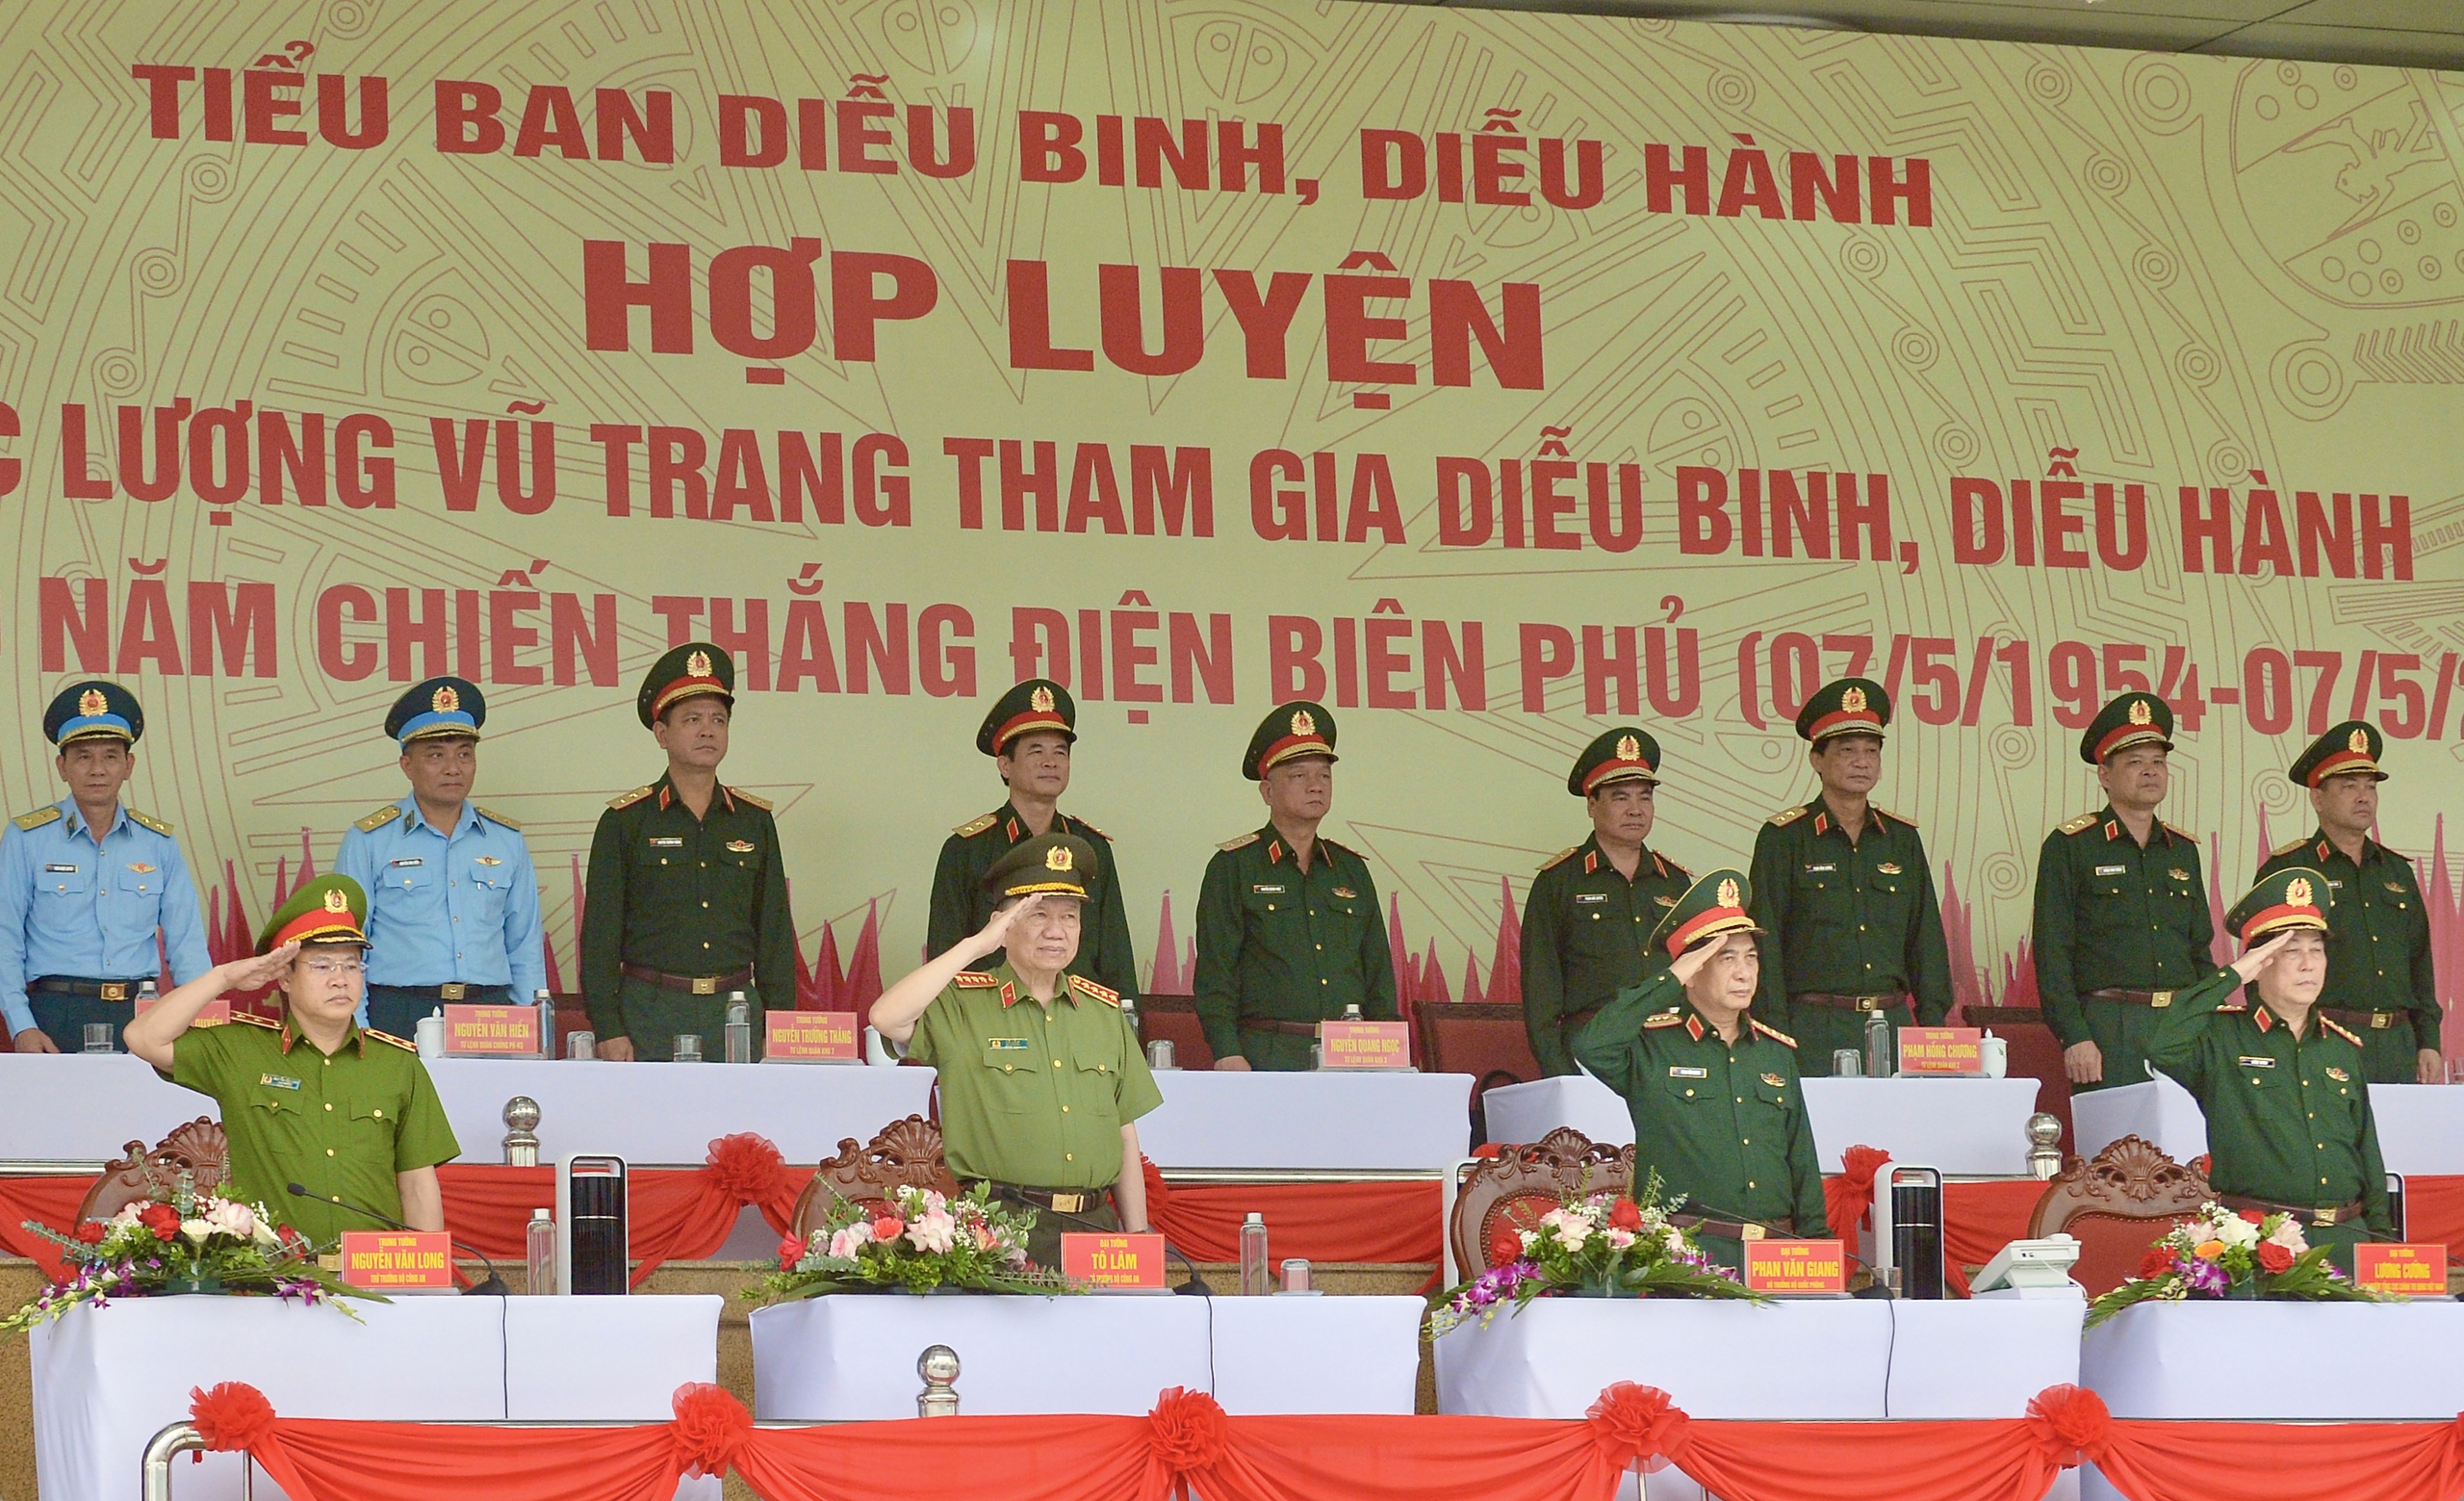 3 đại tướng kiểm tra hợp luyện diễu binh kỷ niệm chiến thắng Điện Biên Phủ- Ảnh 1.